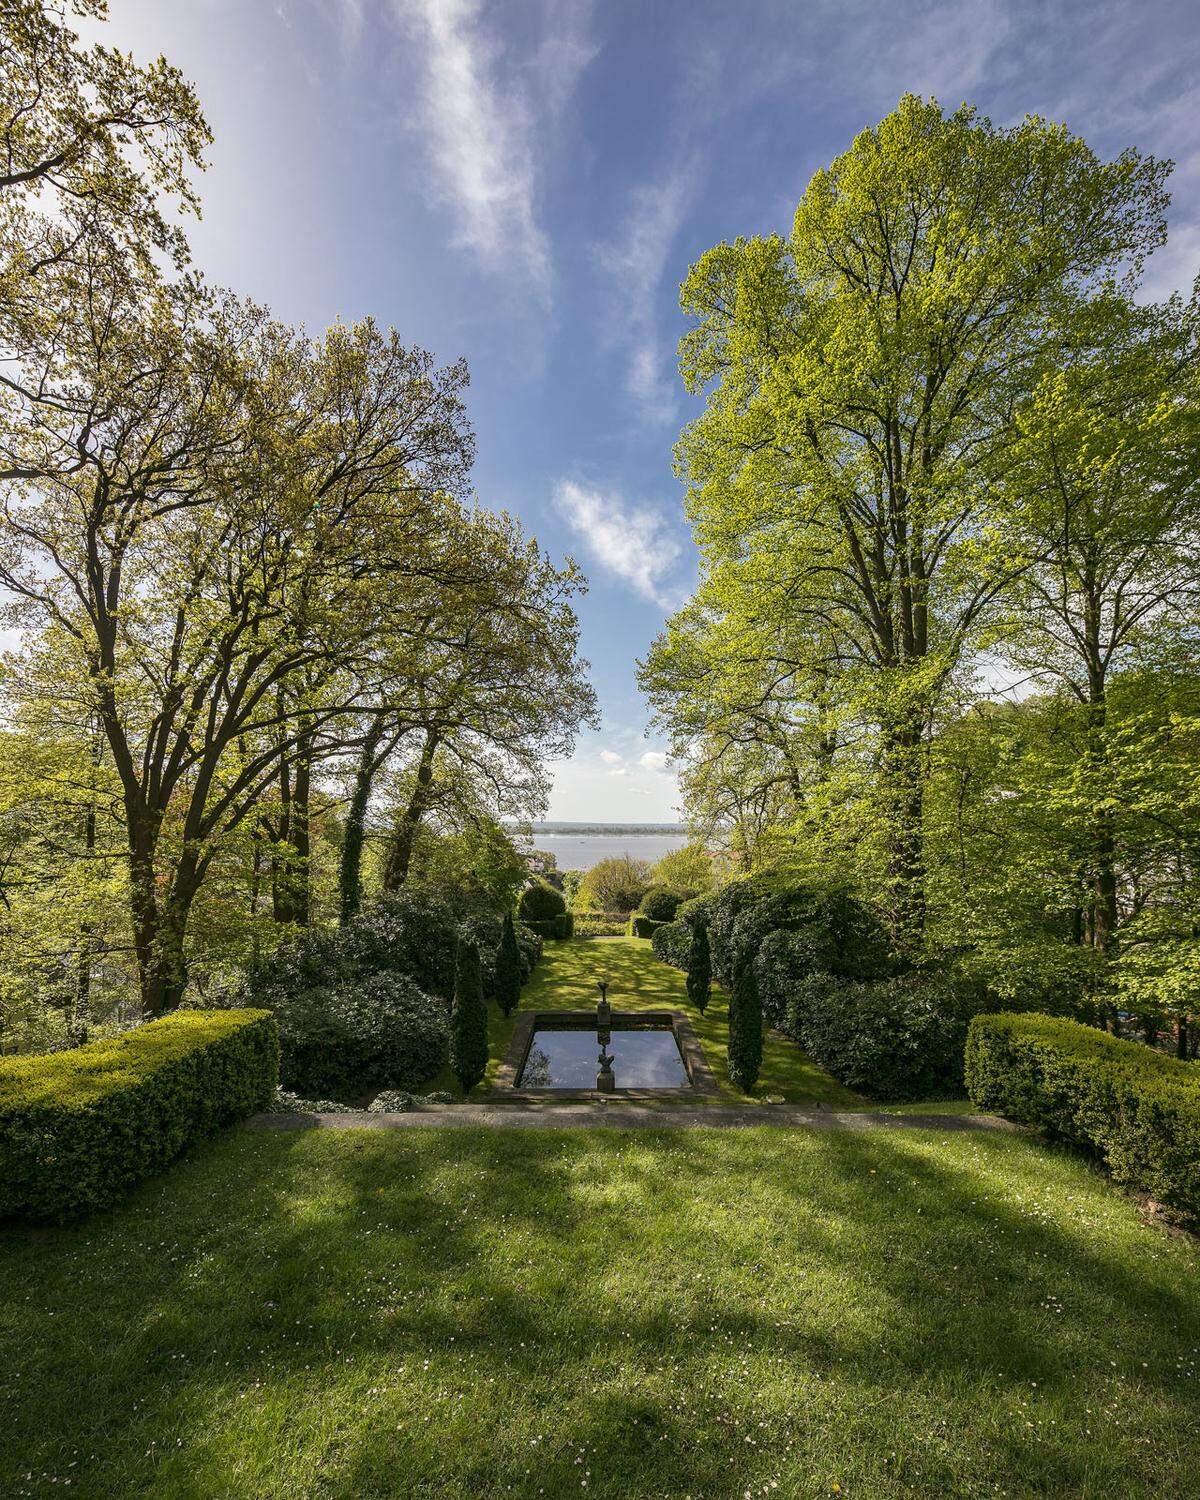 Und Karl Lagerfeld war nicht nur einige Jahre Besitzer, sondern hat die Villa als Hommage an seinen langjährigen Partner Jacques de Bascher in "Jako" umbenannt. Im Garten der Villa fotografierte er die Kampagne für das Parfum "Jako" und auch ein Buch ist der Villa gewidmet: "Ein deutsches Haus".